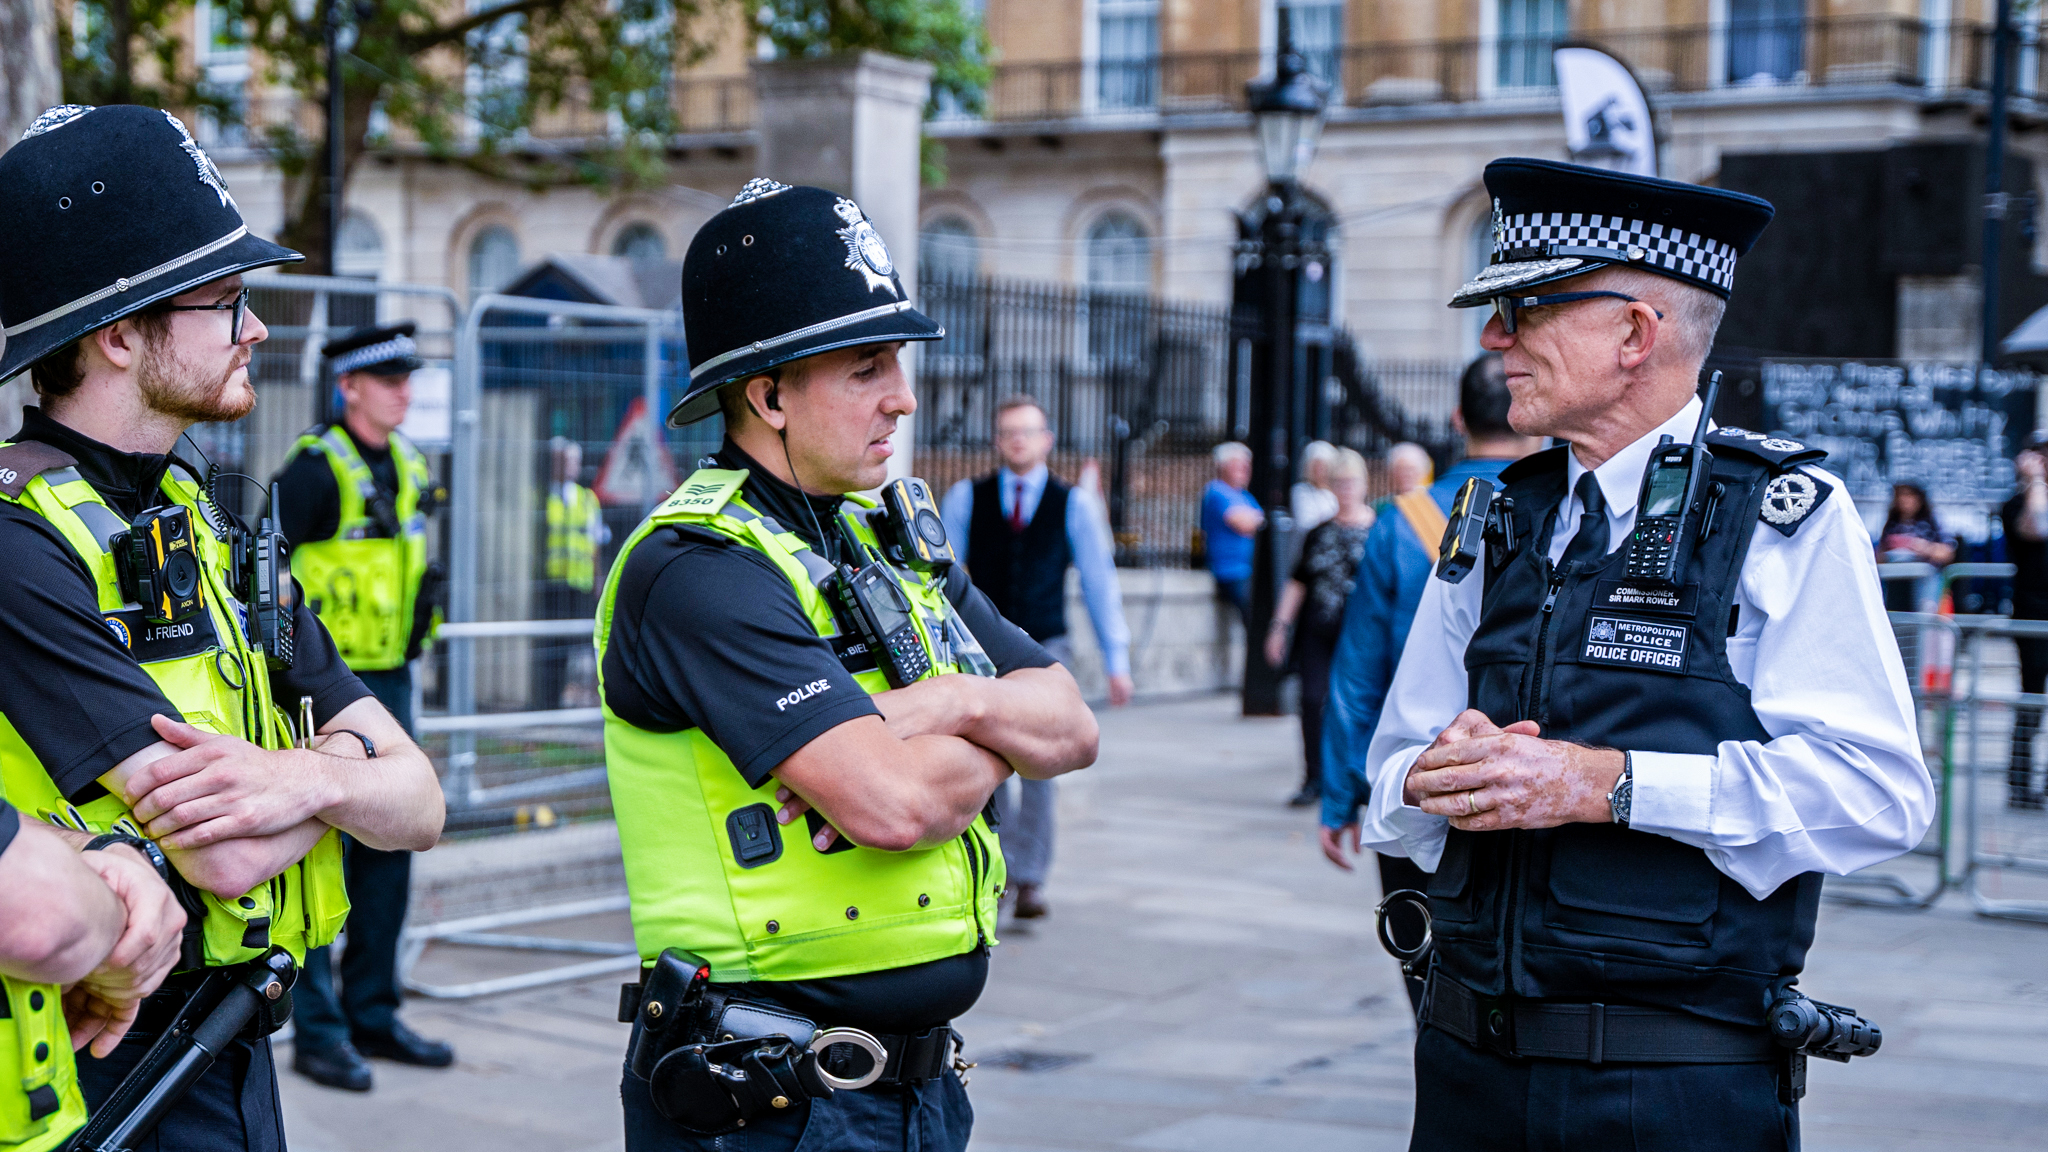 Dos policías fueron apuñalados en el centro de Londres. Quién es el presunto autor